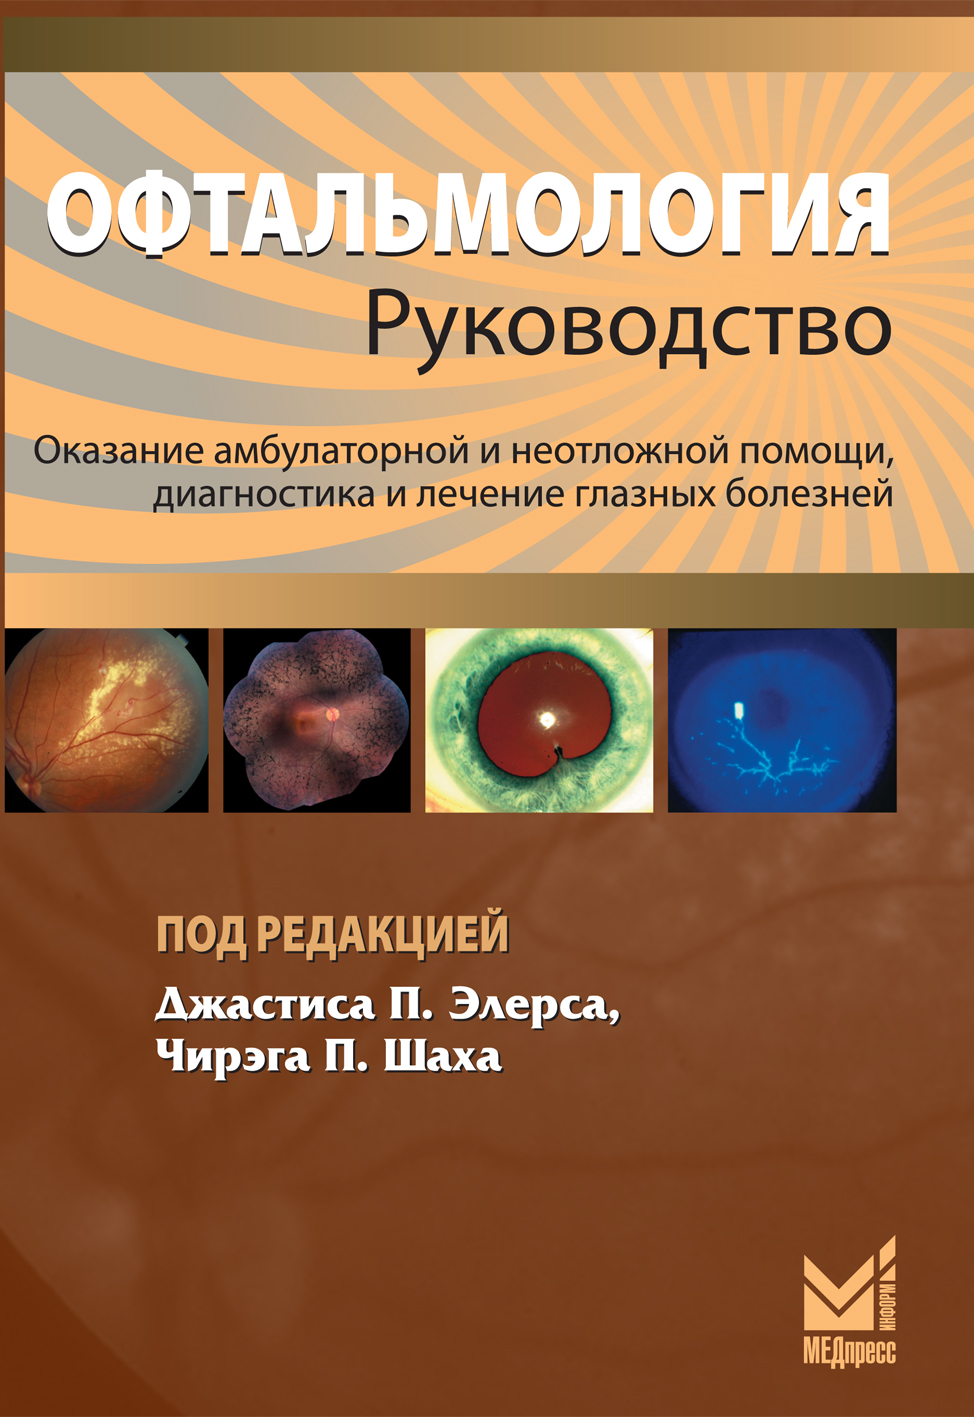 Скачать книгу по офтальмологии